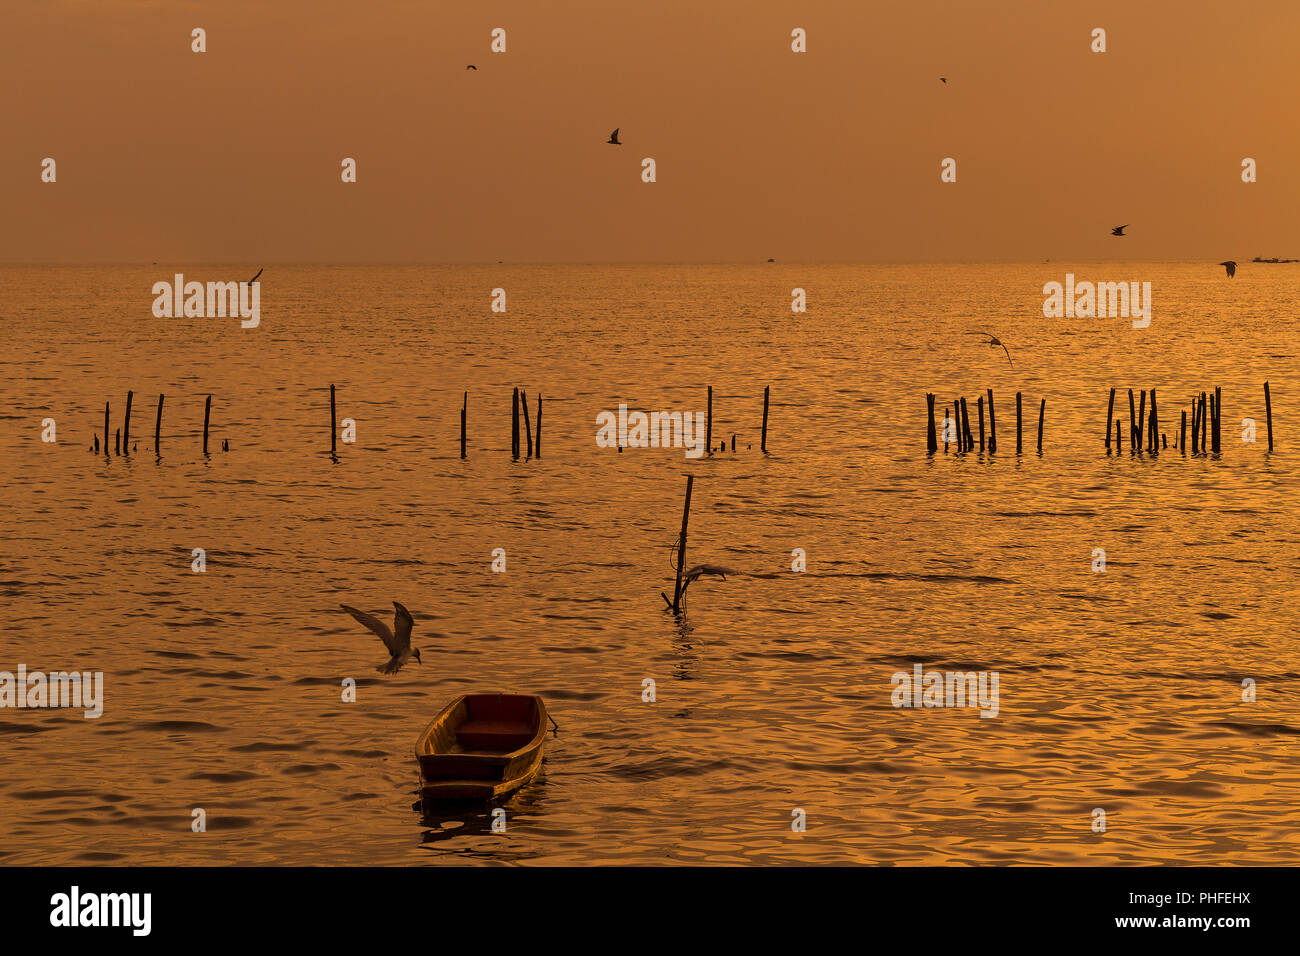 Lonely in legno barca dei pescatori con i gabbiani quando il tramonto / alba sul mare una libertà e un tranquillo Foto Stock